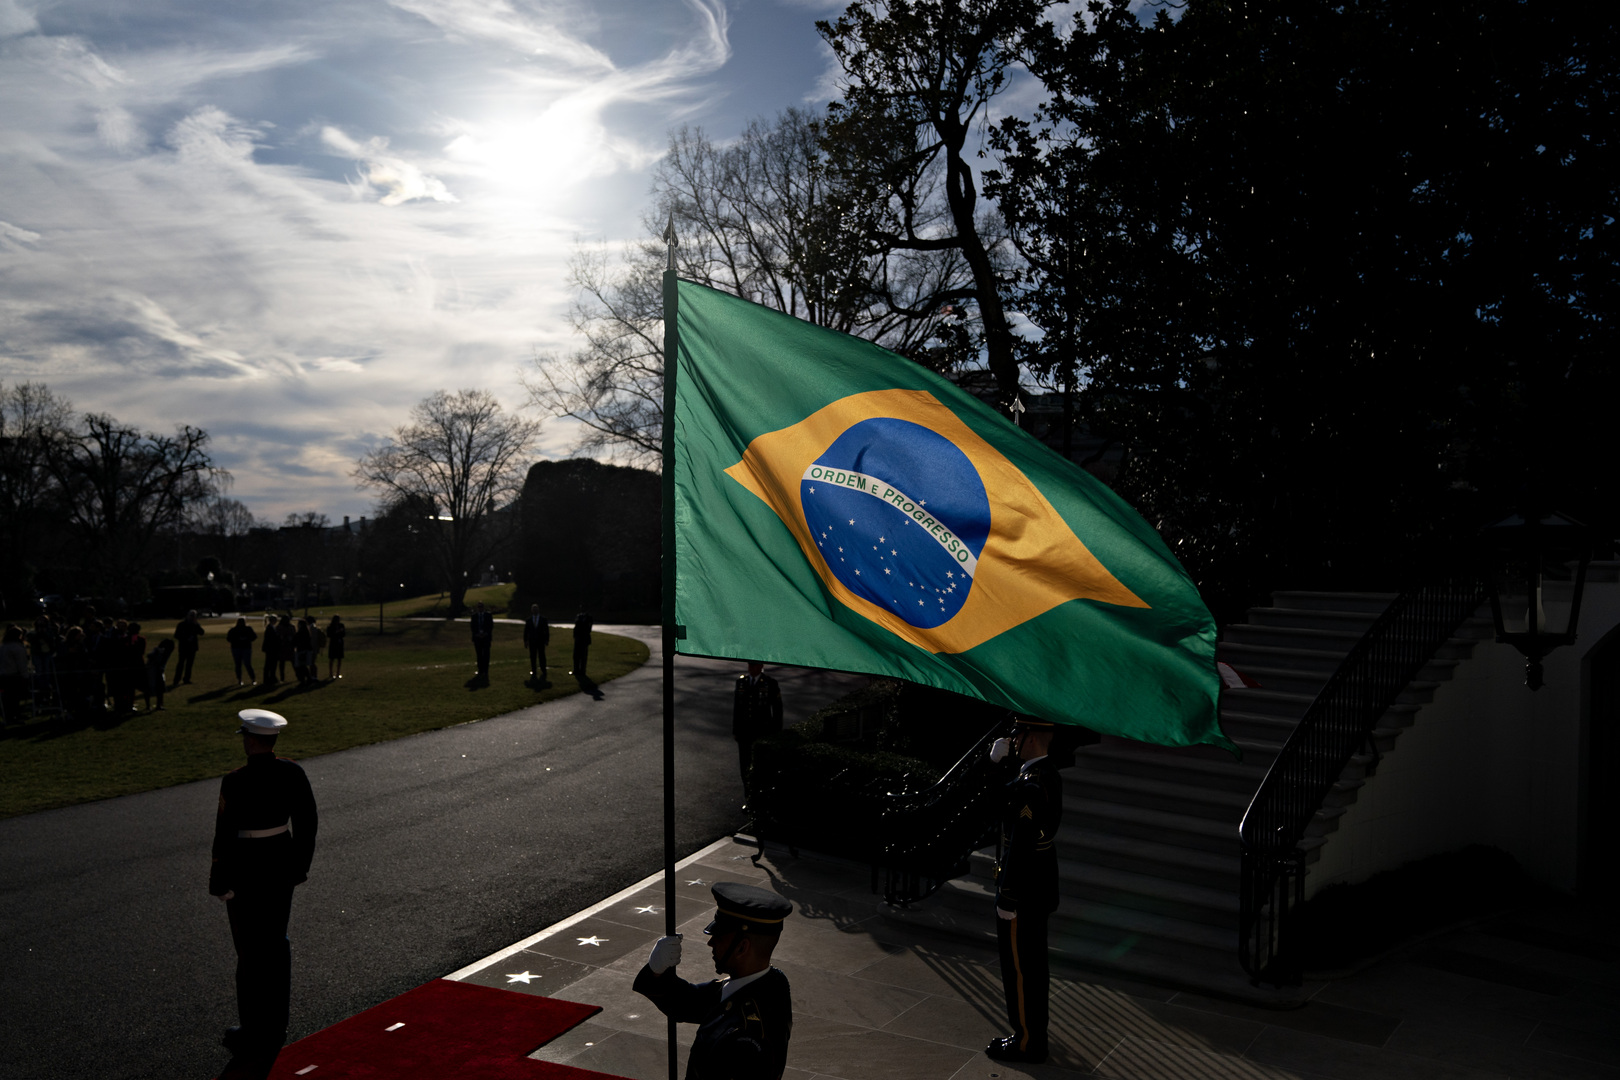 البرازيل تنفي إصدار أي توصيات لمواطنيها بمغادرة روسيا